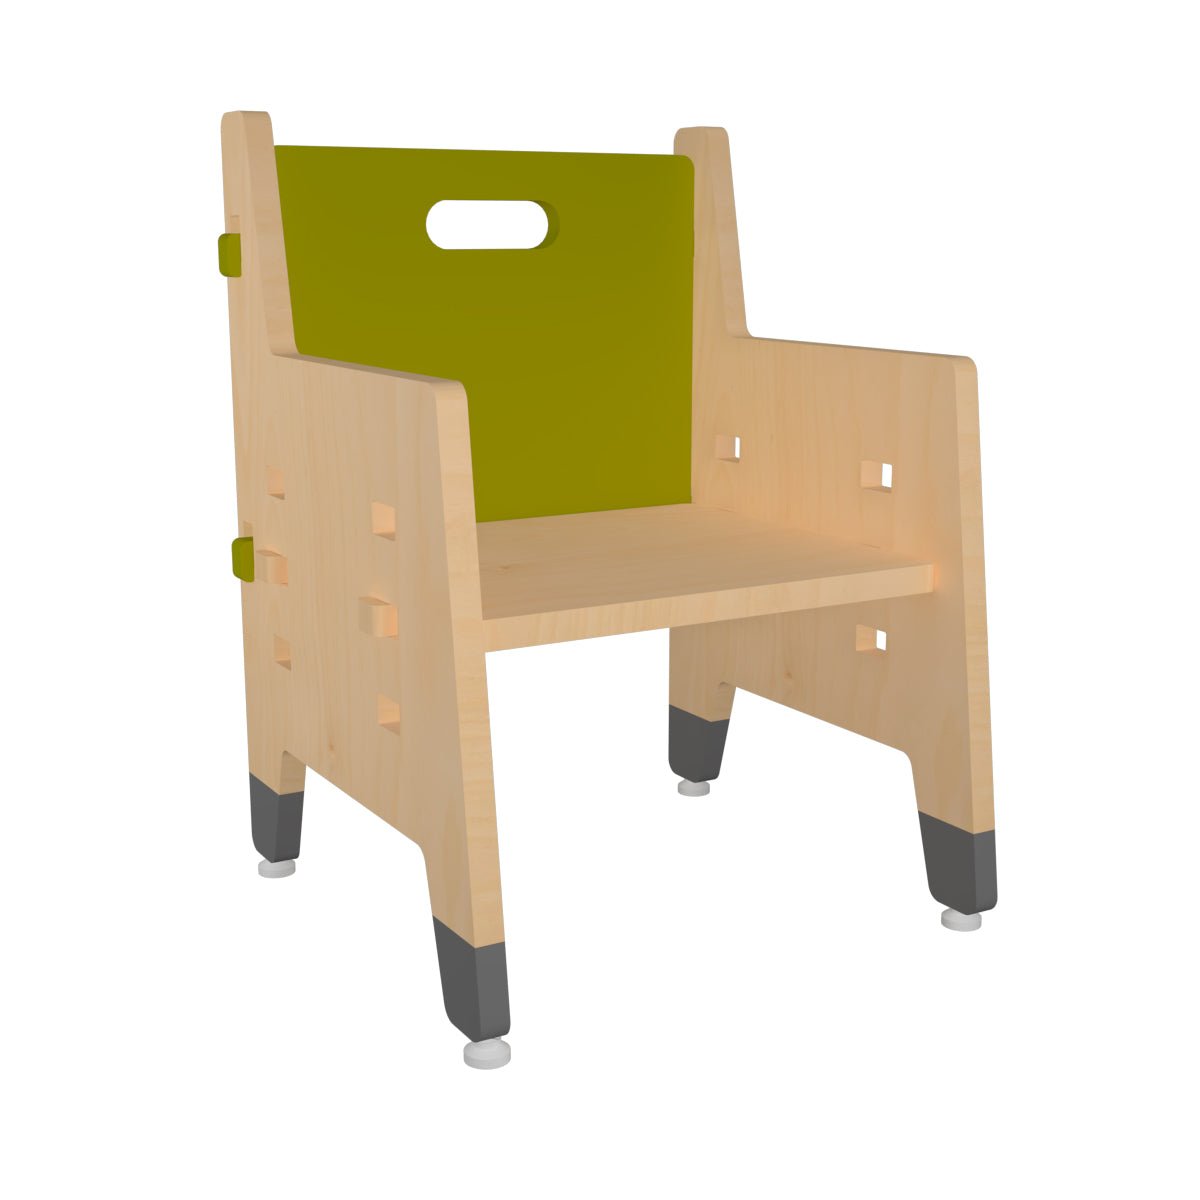 X&Y Purple Mango Weaning Chair - Green - FG120918G